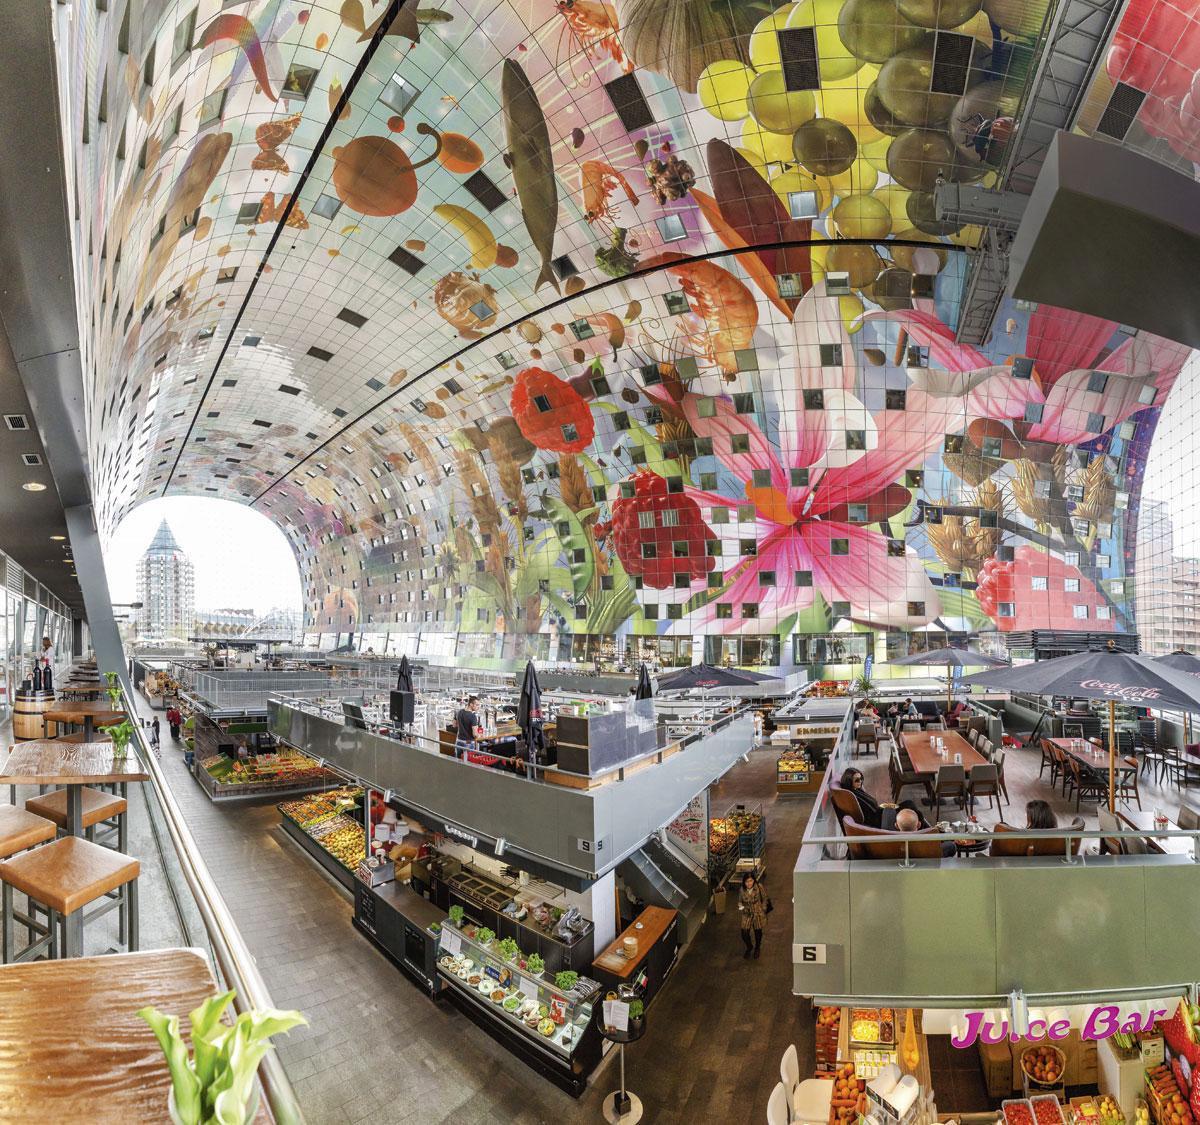 Rotterdam a elle aussi sa Chapelle Sixtine : en 2014, le Markthal a ouvert ses portes. Au plafond, l'artiste Arno Coenen s'en est donné à coeur joie, donnant naissance à une incroyable corne d'abondance. Une ode aux plaisirs terrestres, plutôt qu'au divin au-delà.